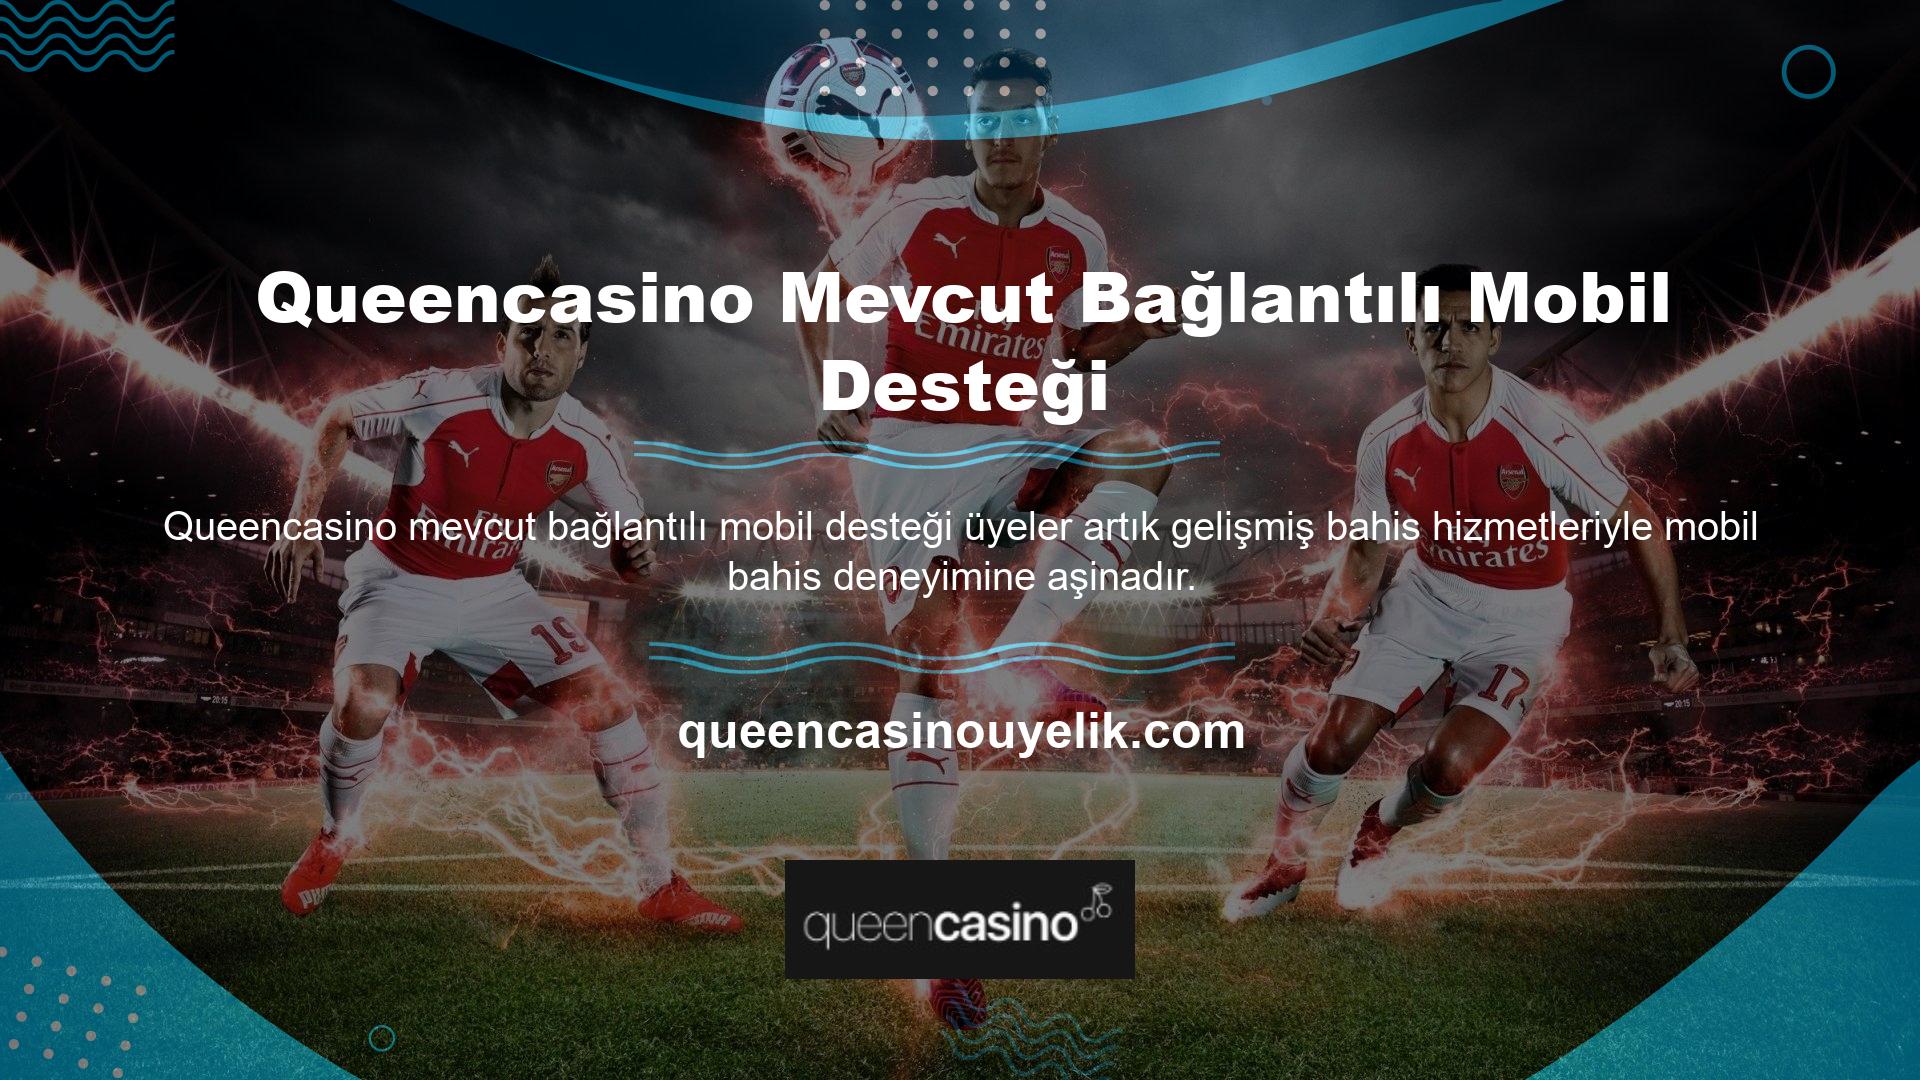 Queencasino mevcut mobil destek ortağı Gaming, bu hizmeti sunan birkaç bahis sitesinden biridir